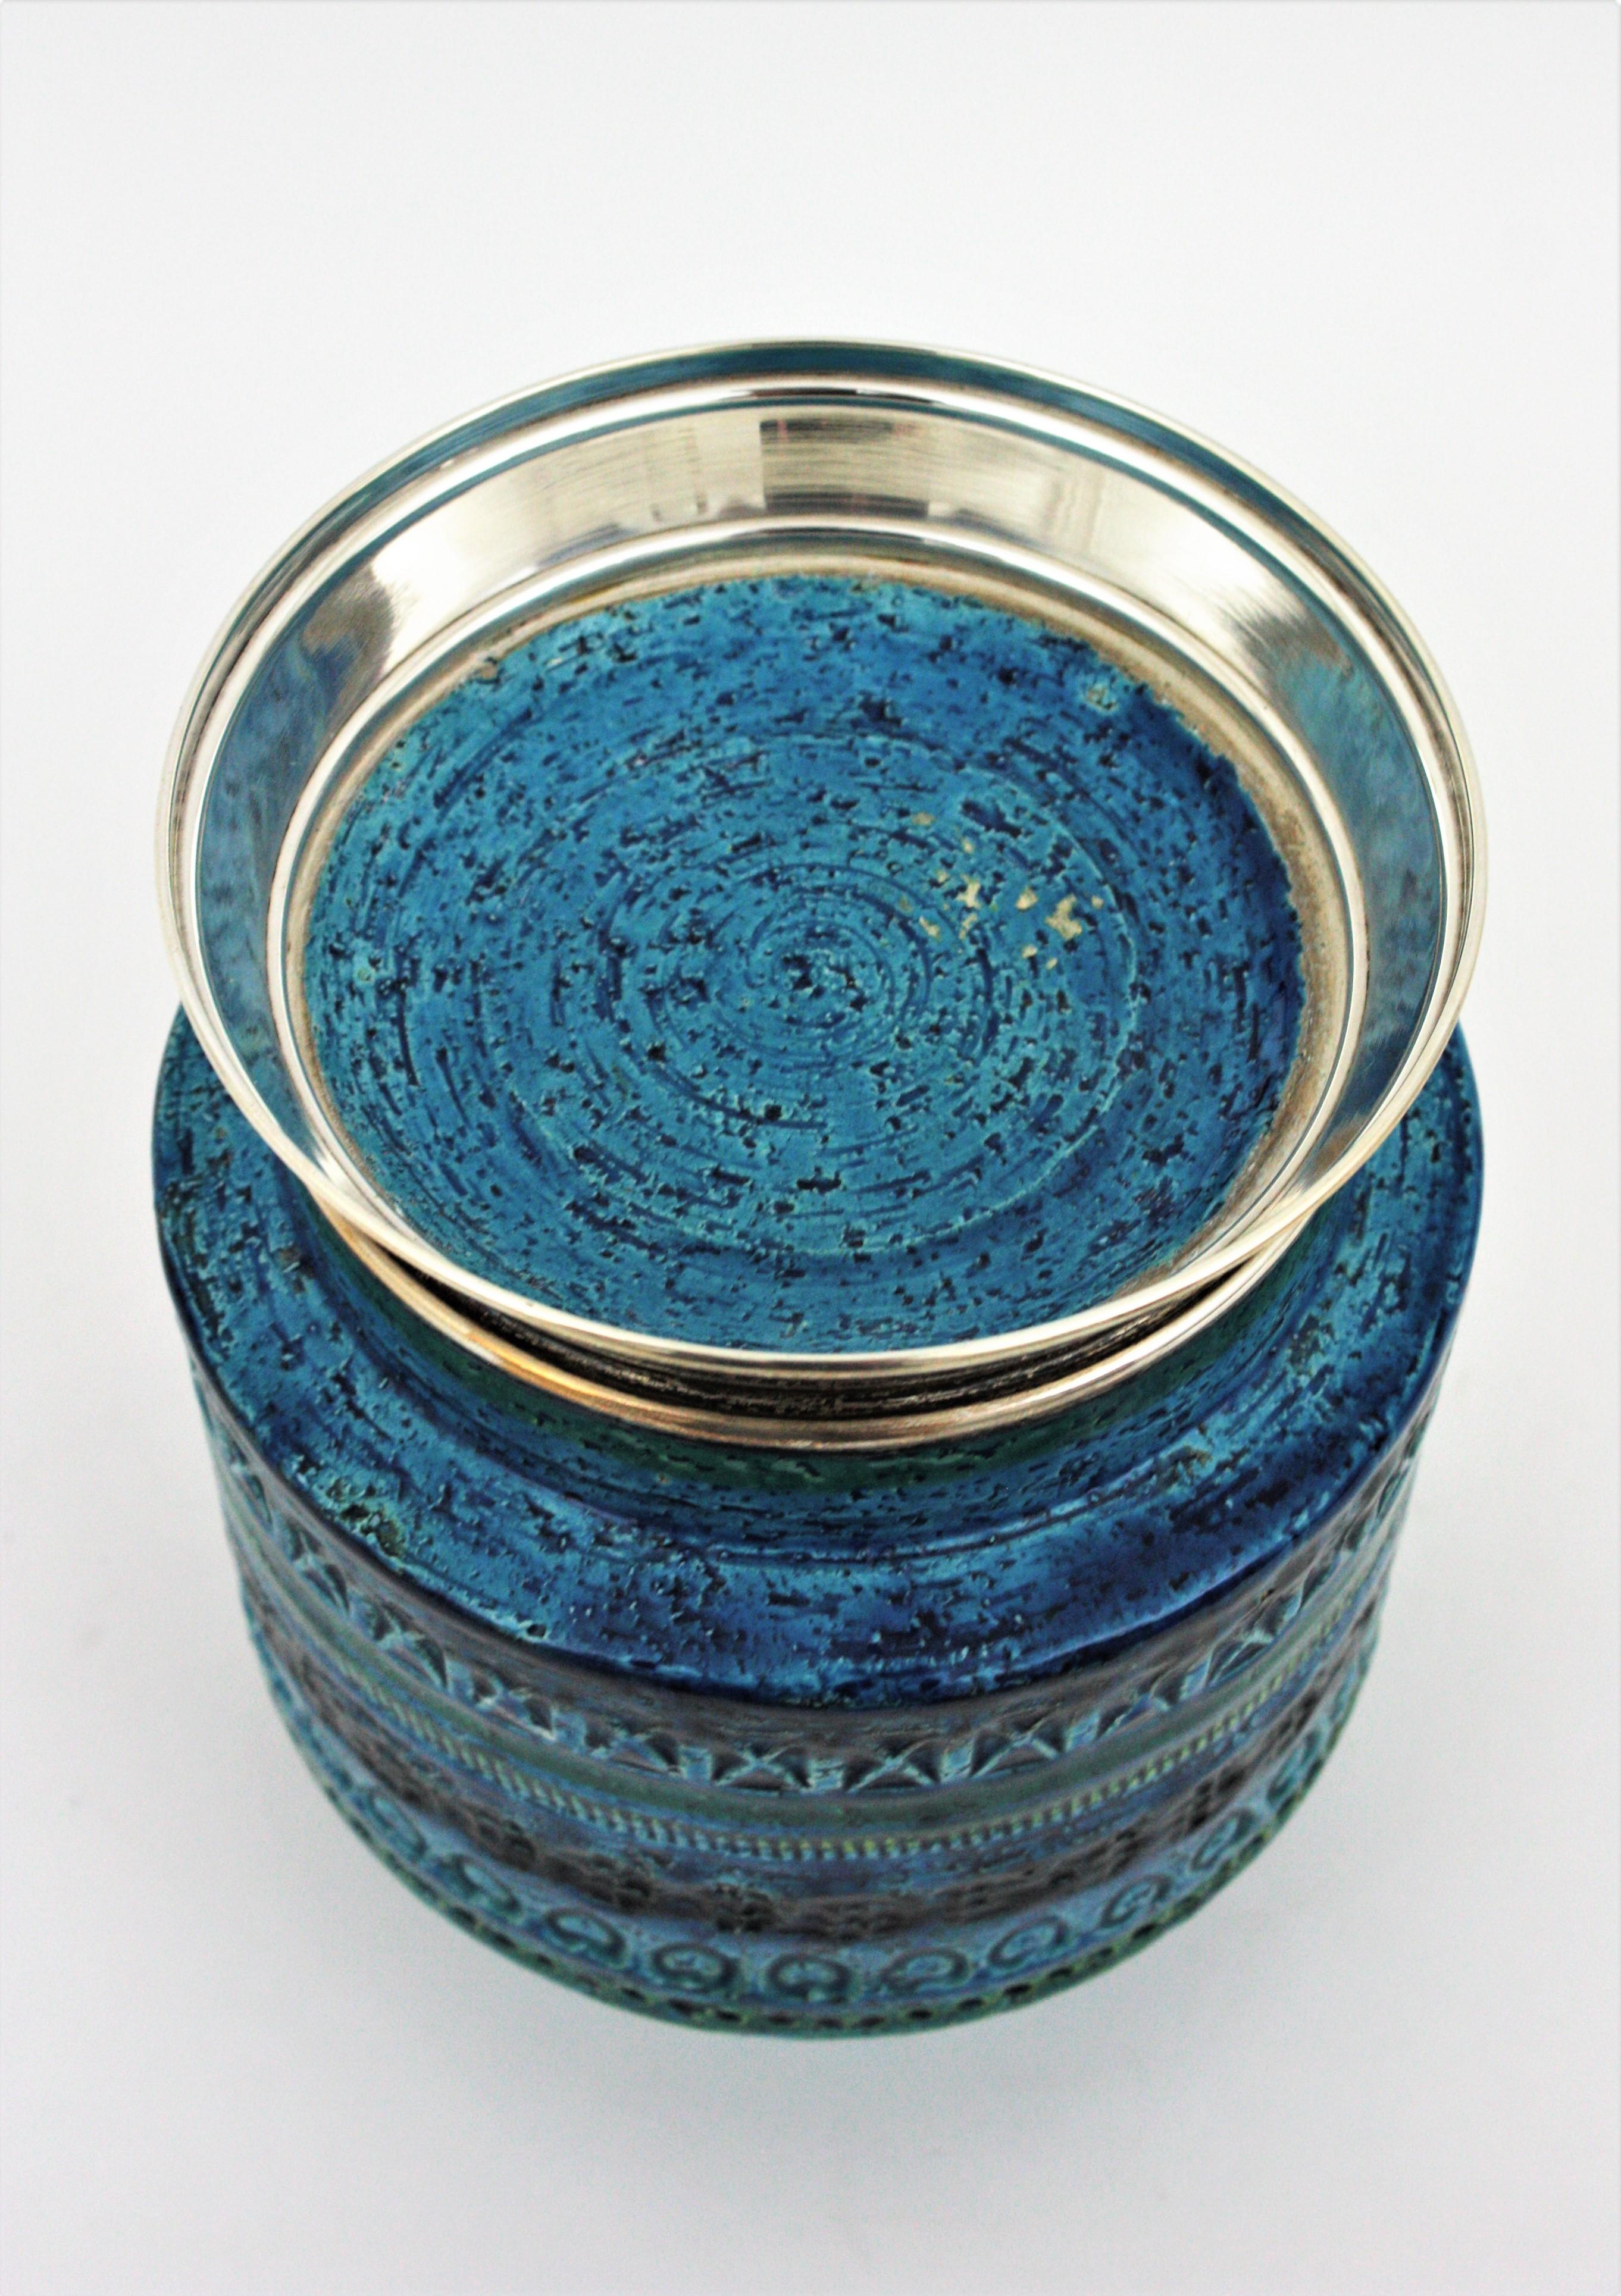 Bitossi Aldo Londi Rimini Blue Ceramic Vase on Sterling Silver Base, 1960s For Sale 4